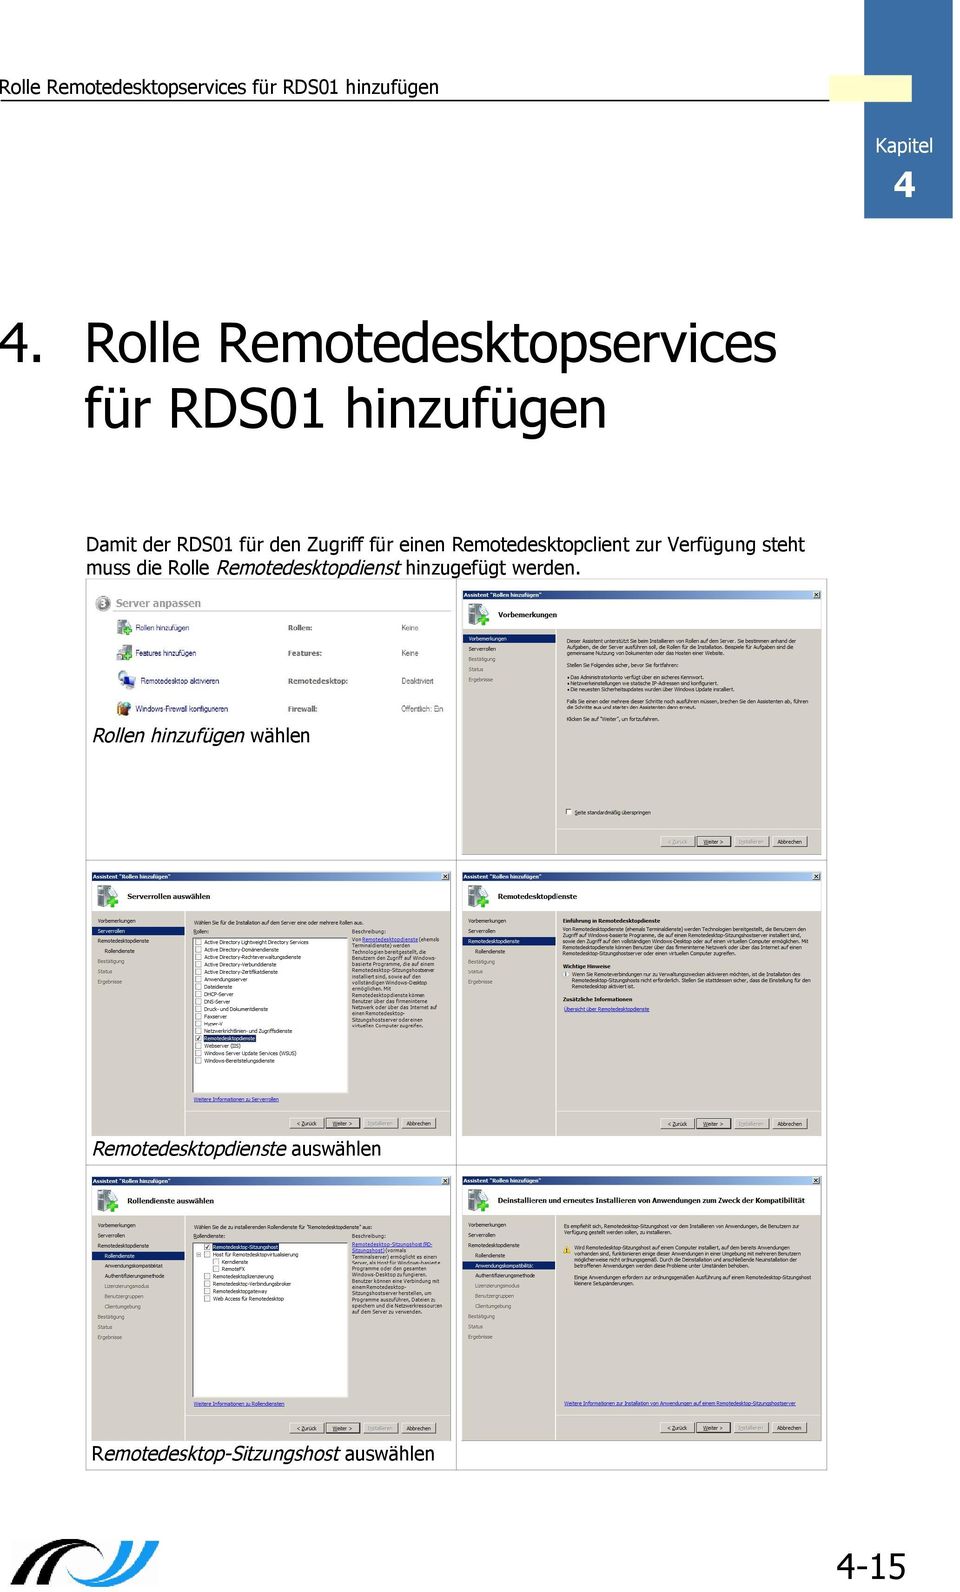 einen Remotedesktopclient zur Verfügung steht muss die Rolle Remotedesktopdienst